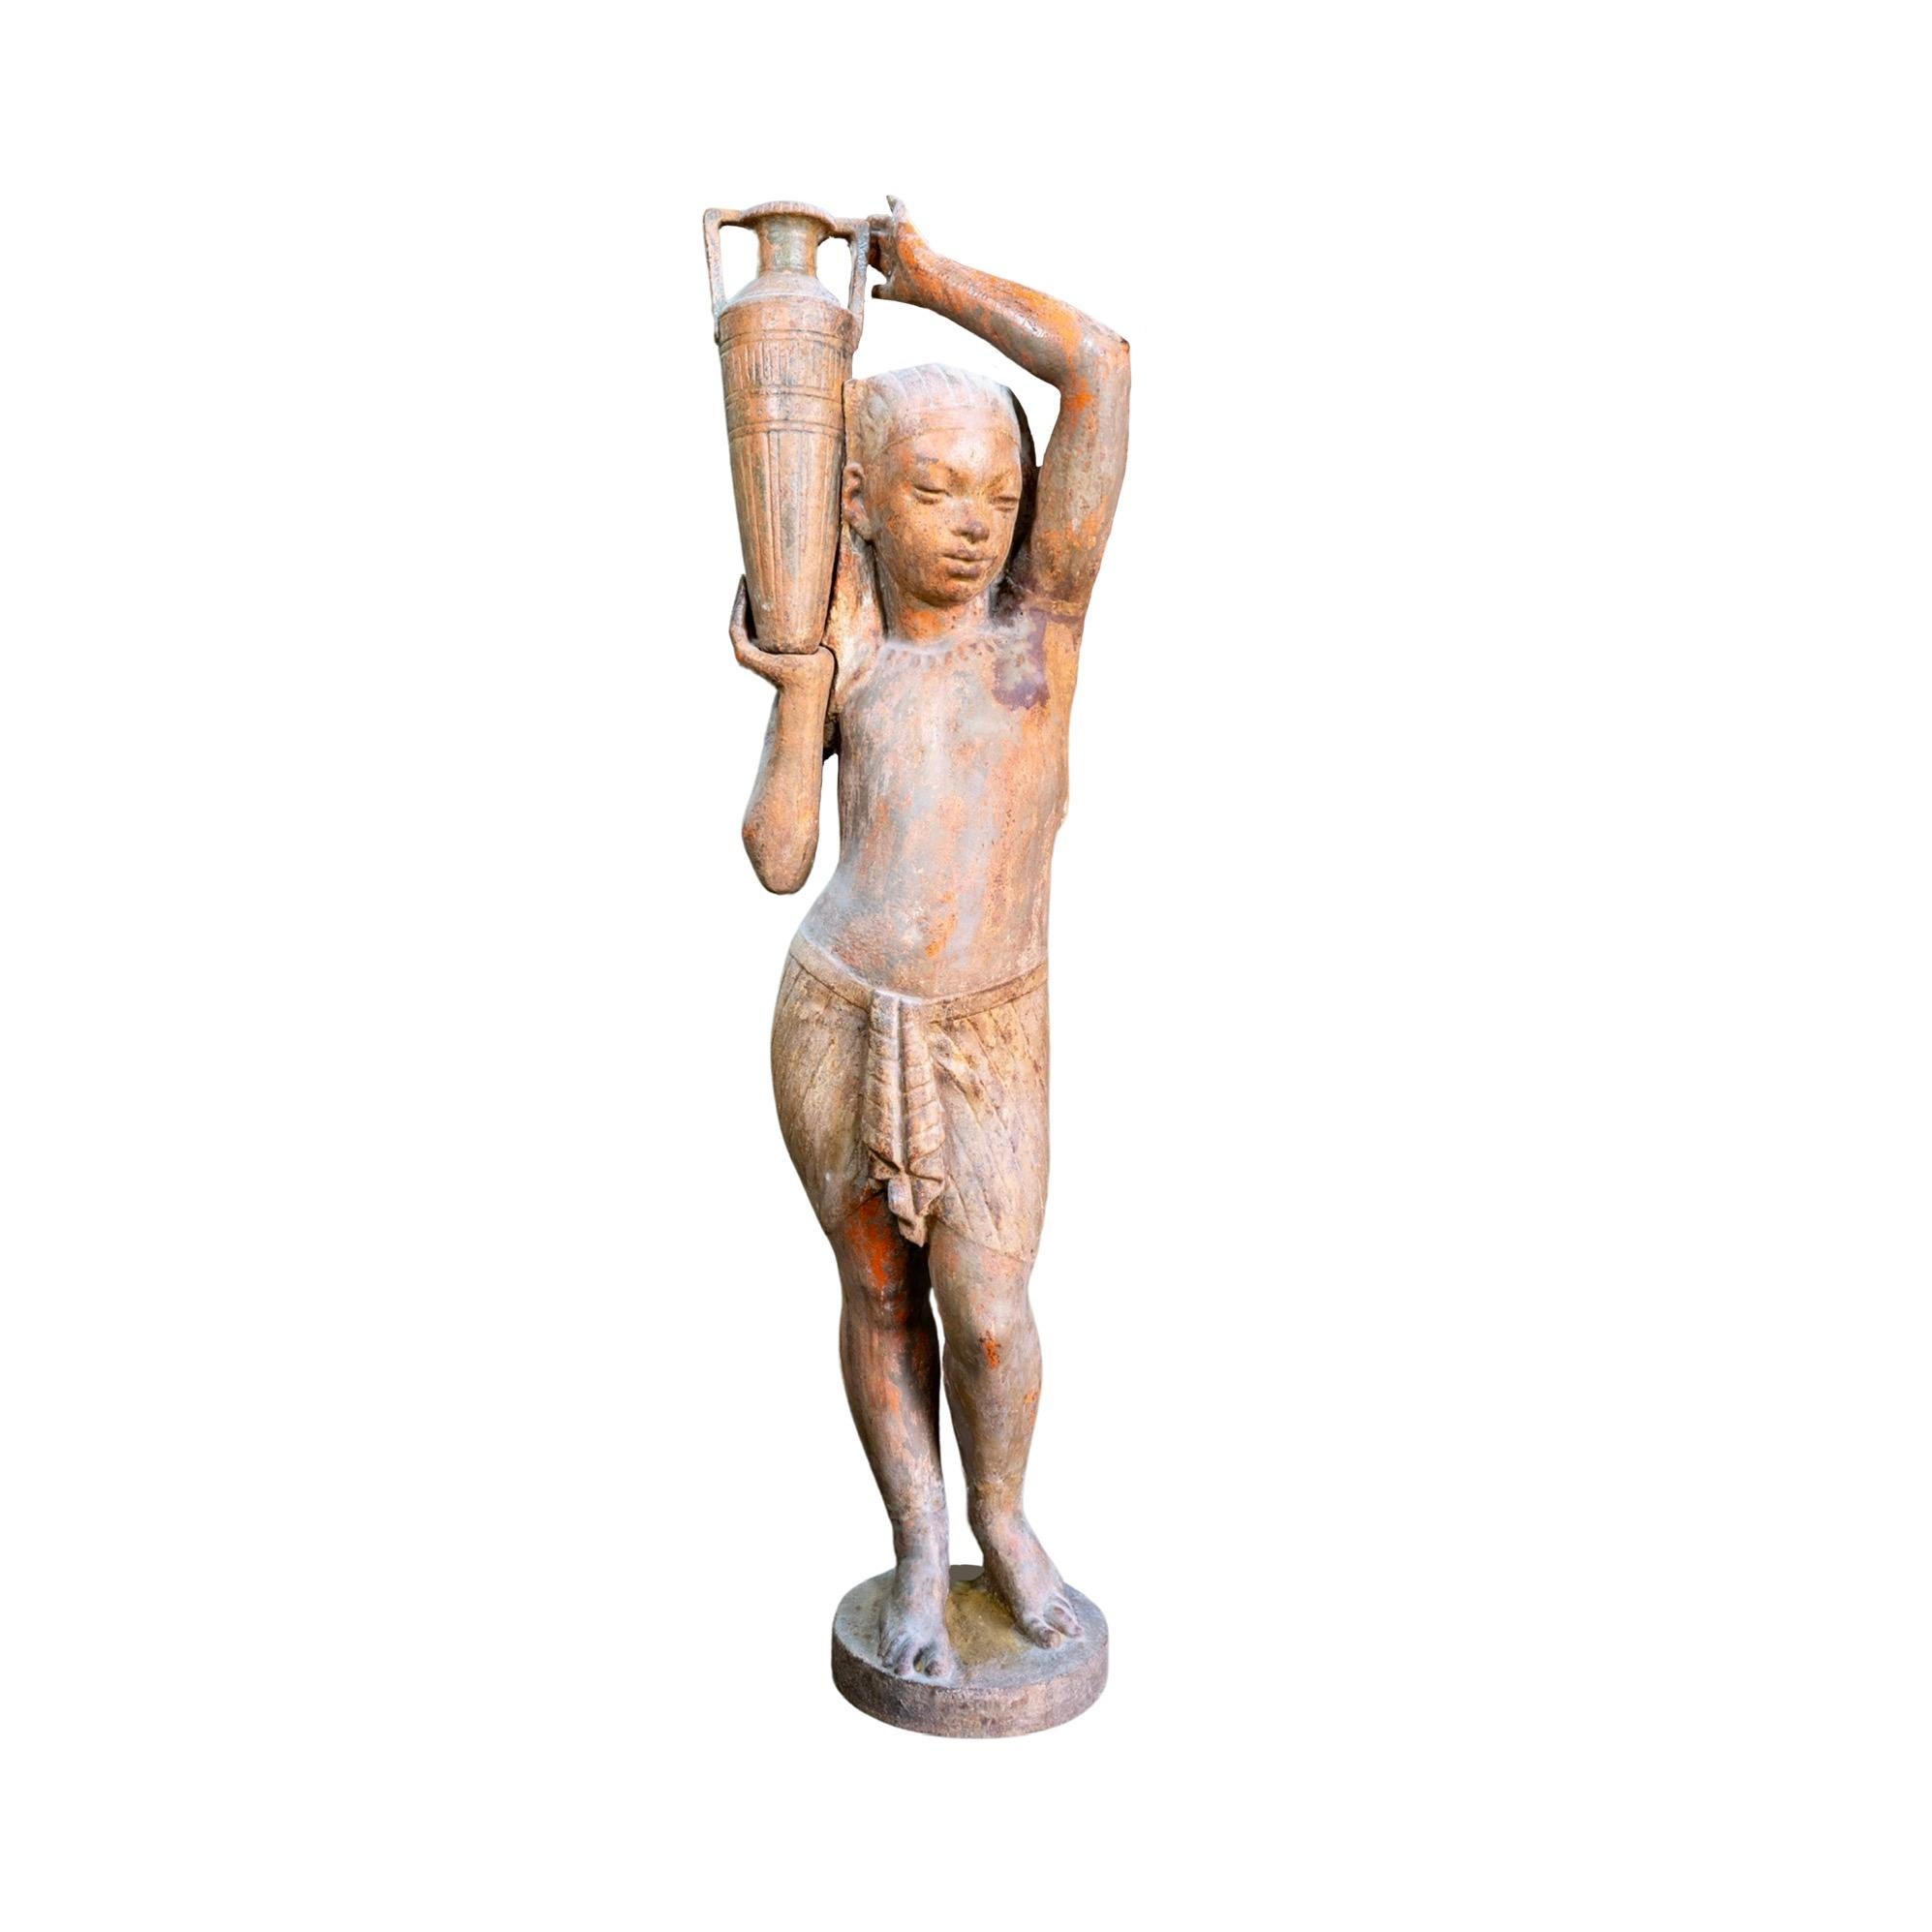 Diese französische eiserne ägyptische Wasserträger-Skulptur wurde in den 1890er Jahren fachmännisch gefertigt und zeichnet sich durch eine exquisite Konstruktion aus massivem Gusseisen aus. Mit einer schönen Patina, die Charakter verleiht, ist diese